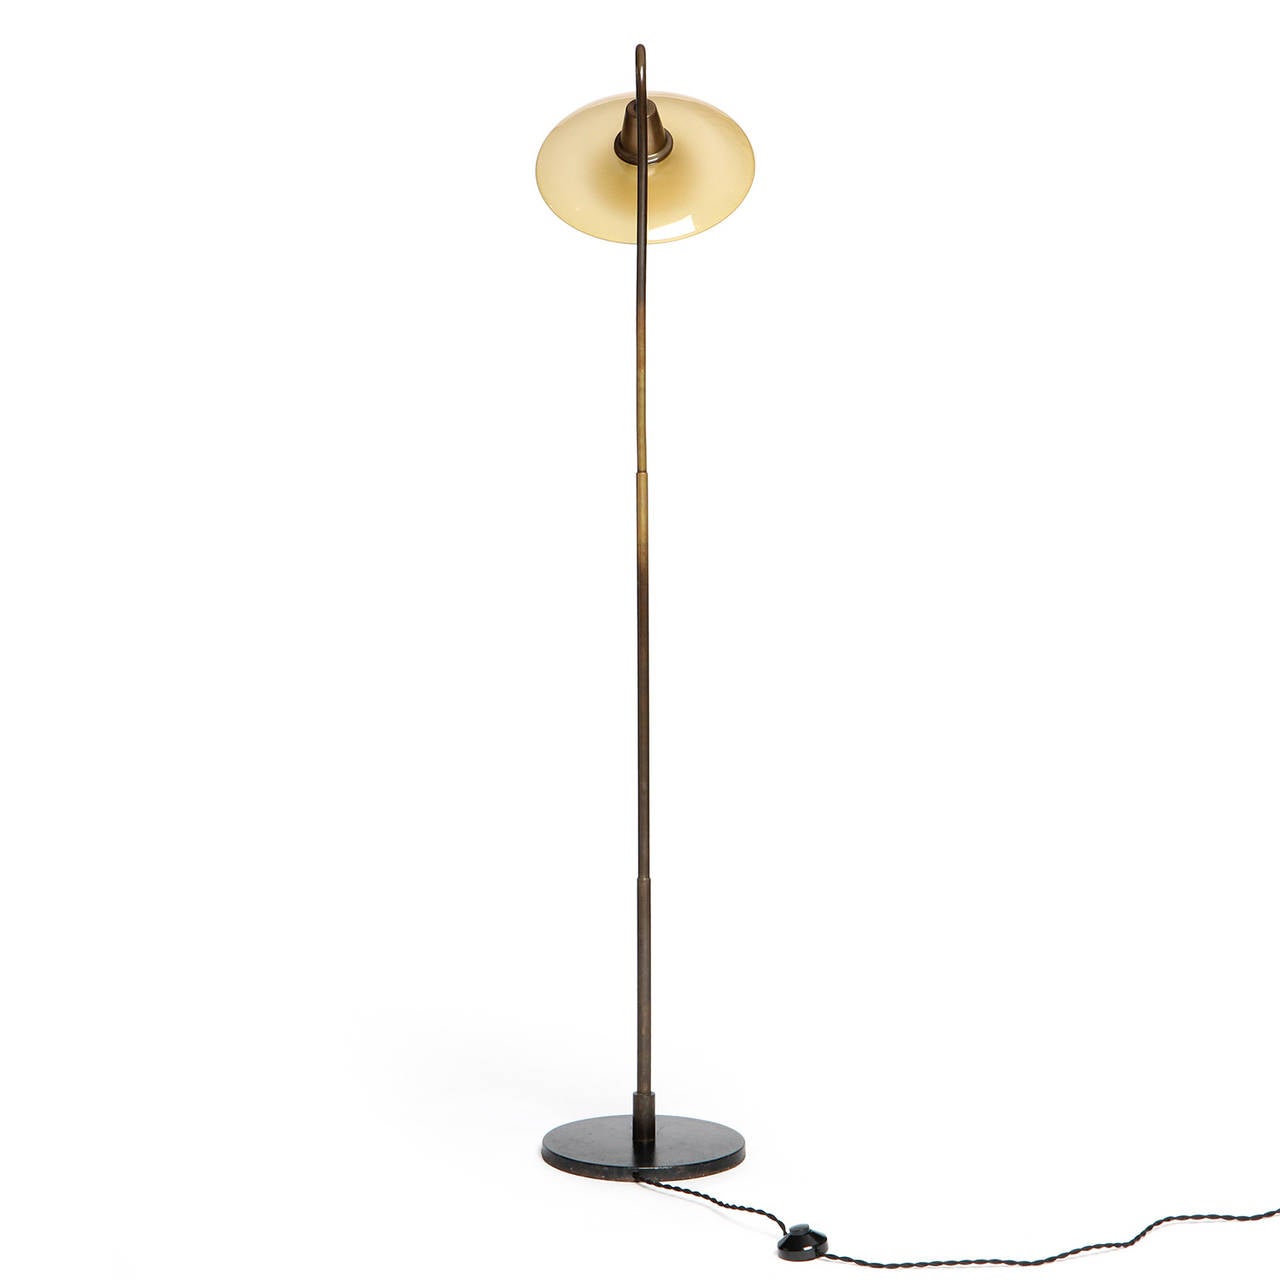 Scandinavian Modern Poul Henningsen Floor Lamp with Amber Glass Shades